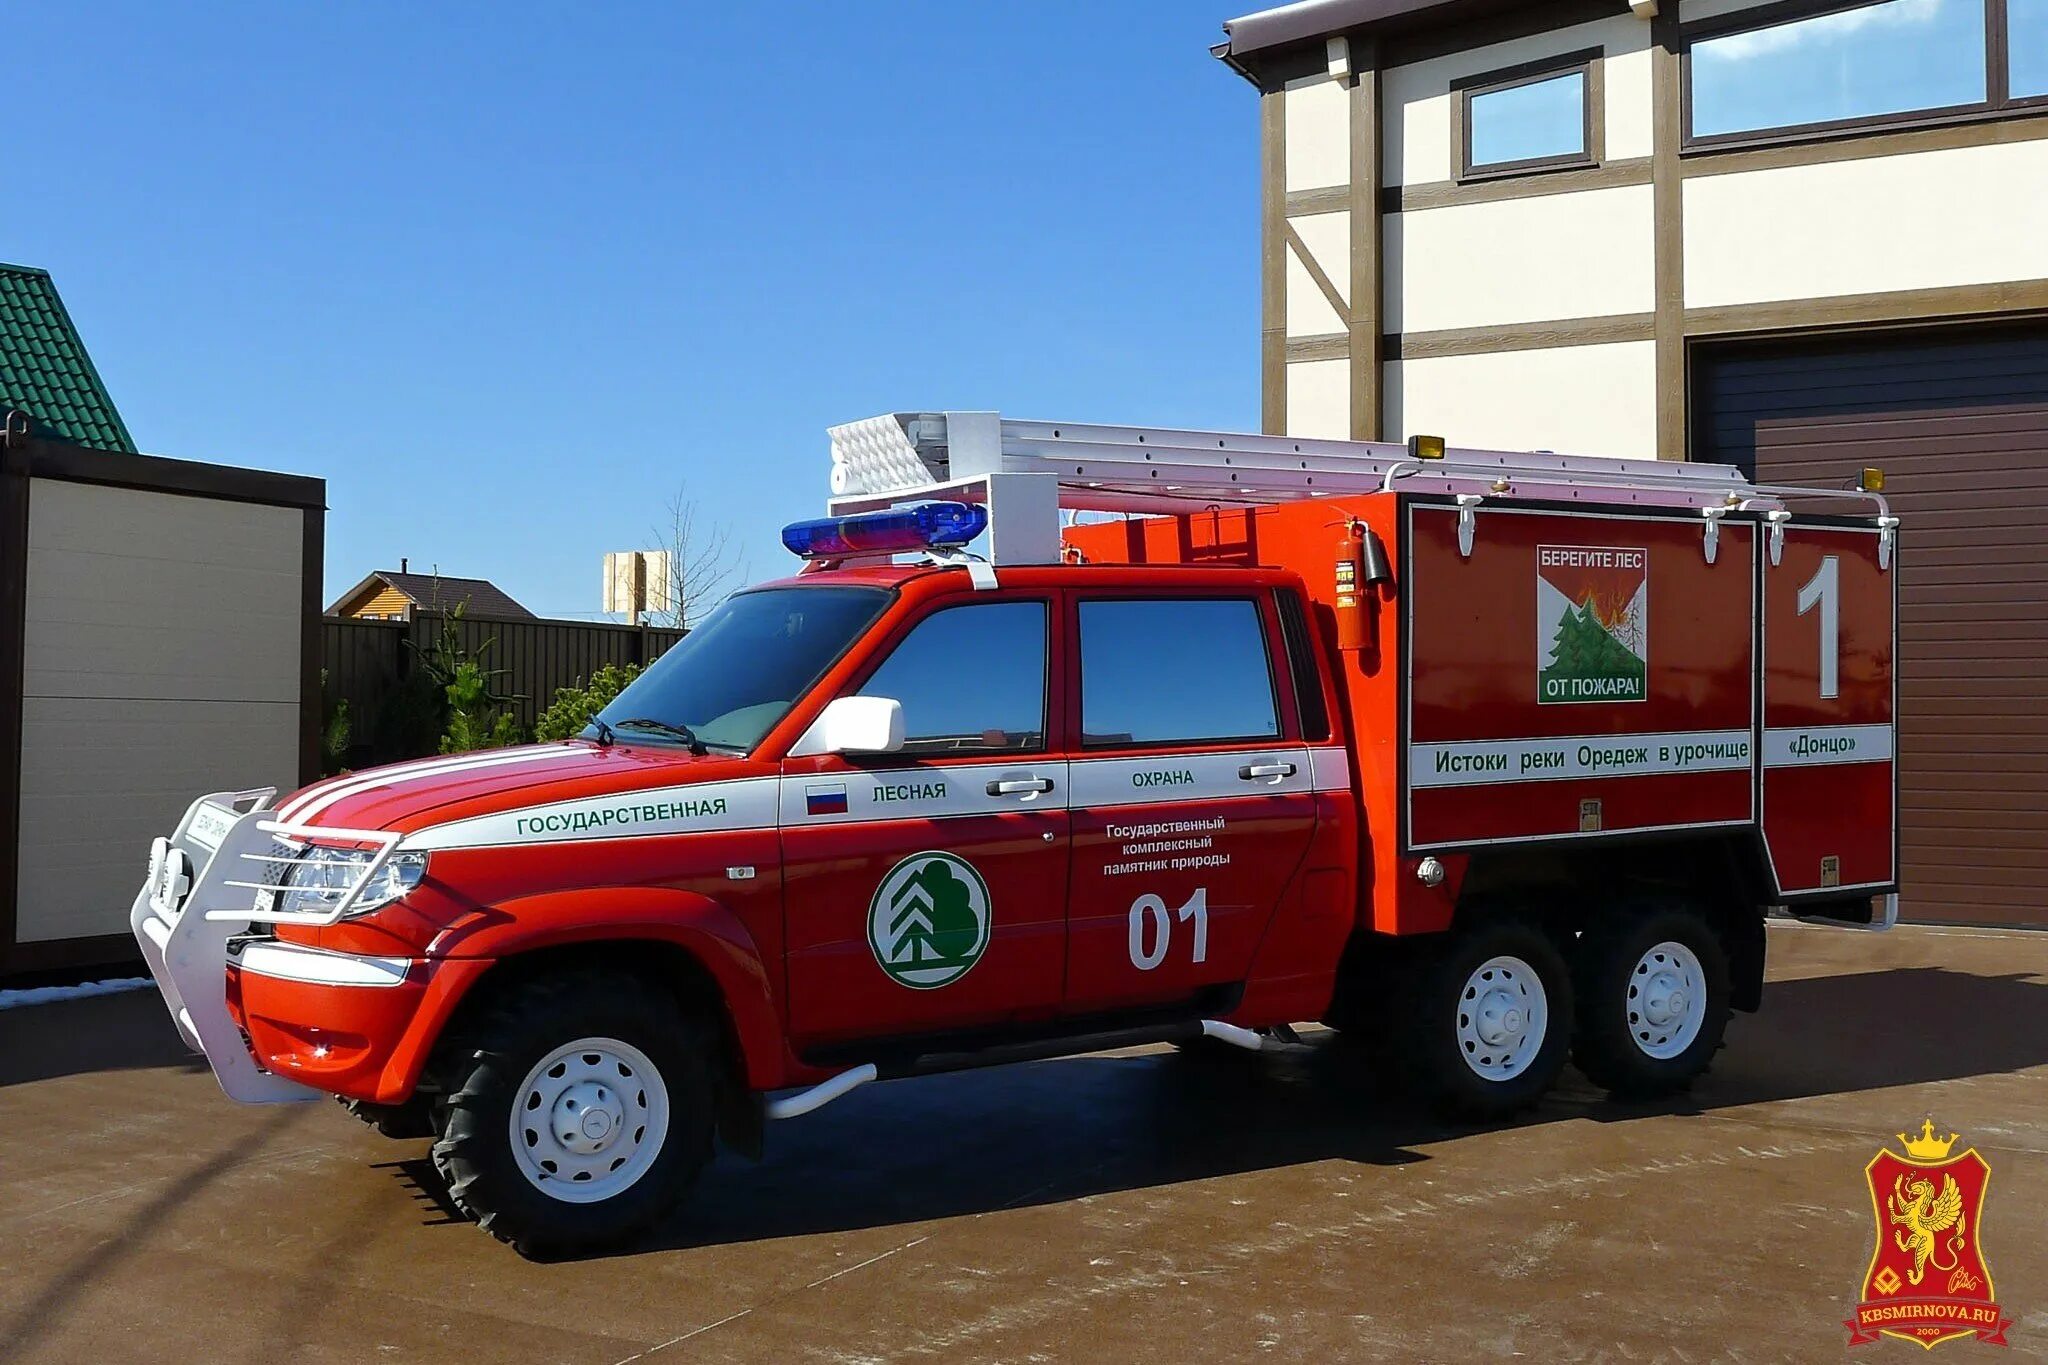 УАЗ-236382. УАЗ Патриот пожарный 236382. Пожарный водозащитный автомобиль (АВЗ). УАЗ профи апп пожарная машина.